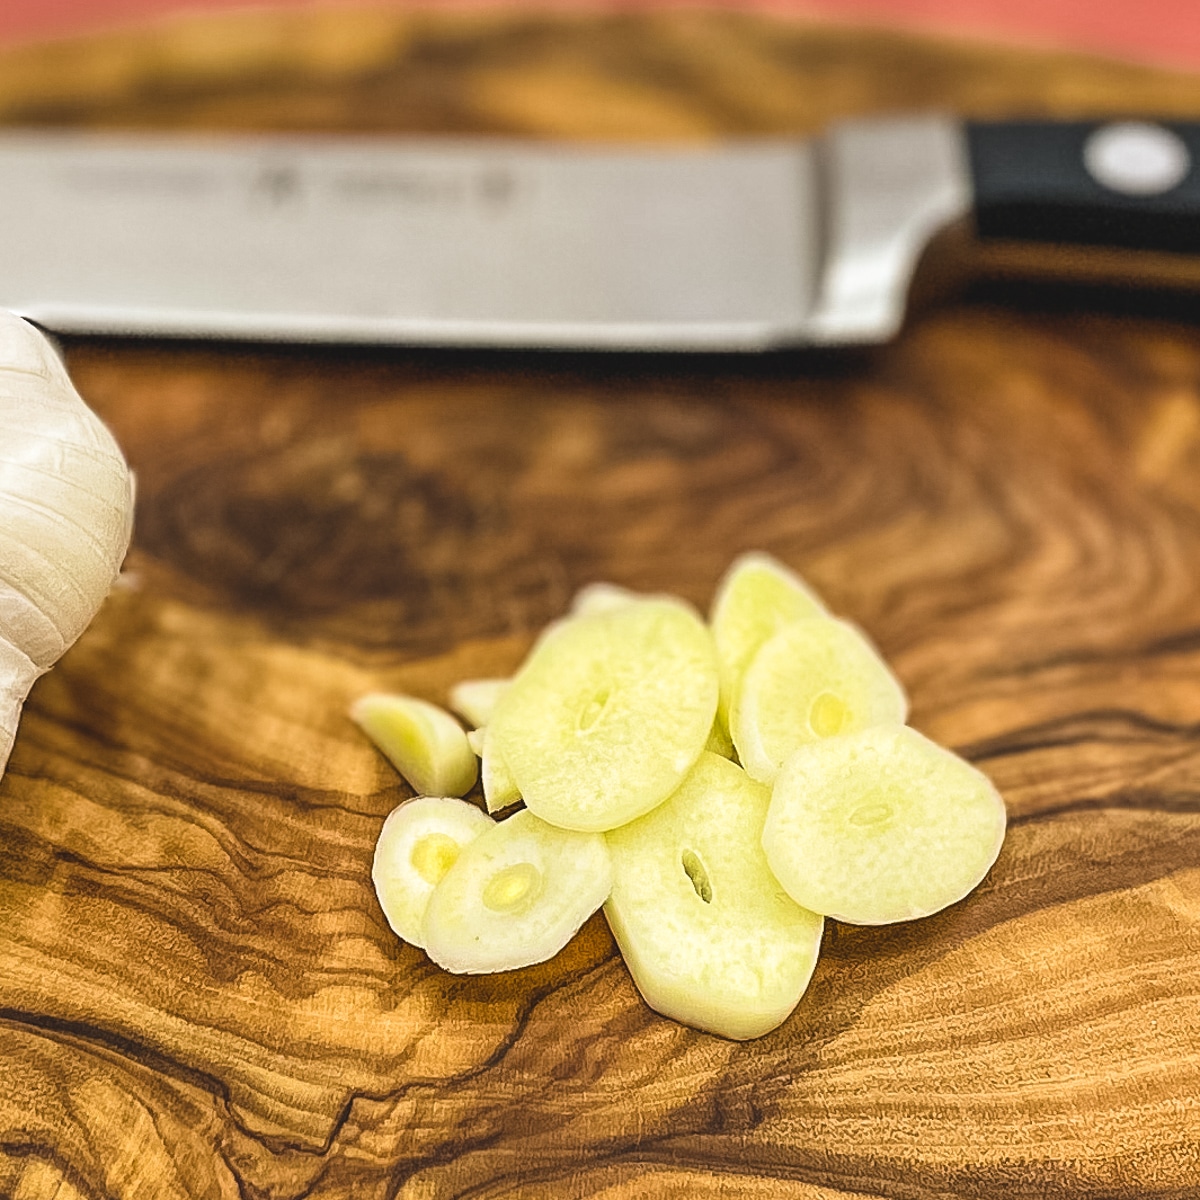 Sliced garlic on a wooden cutting board.